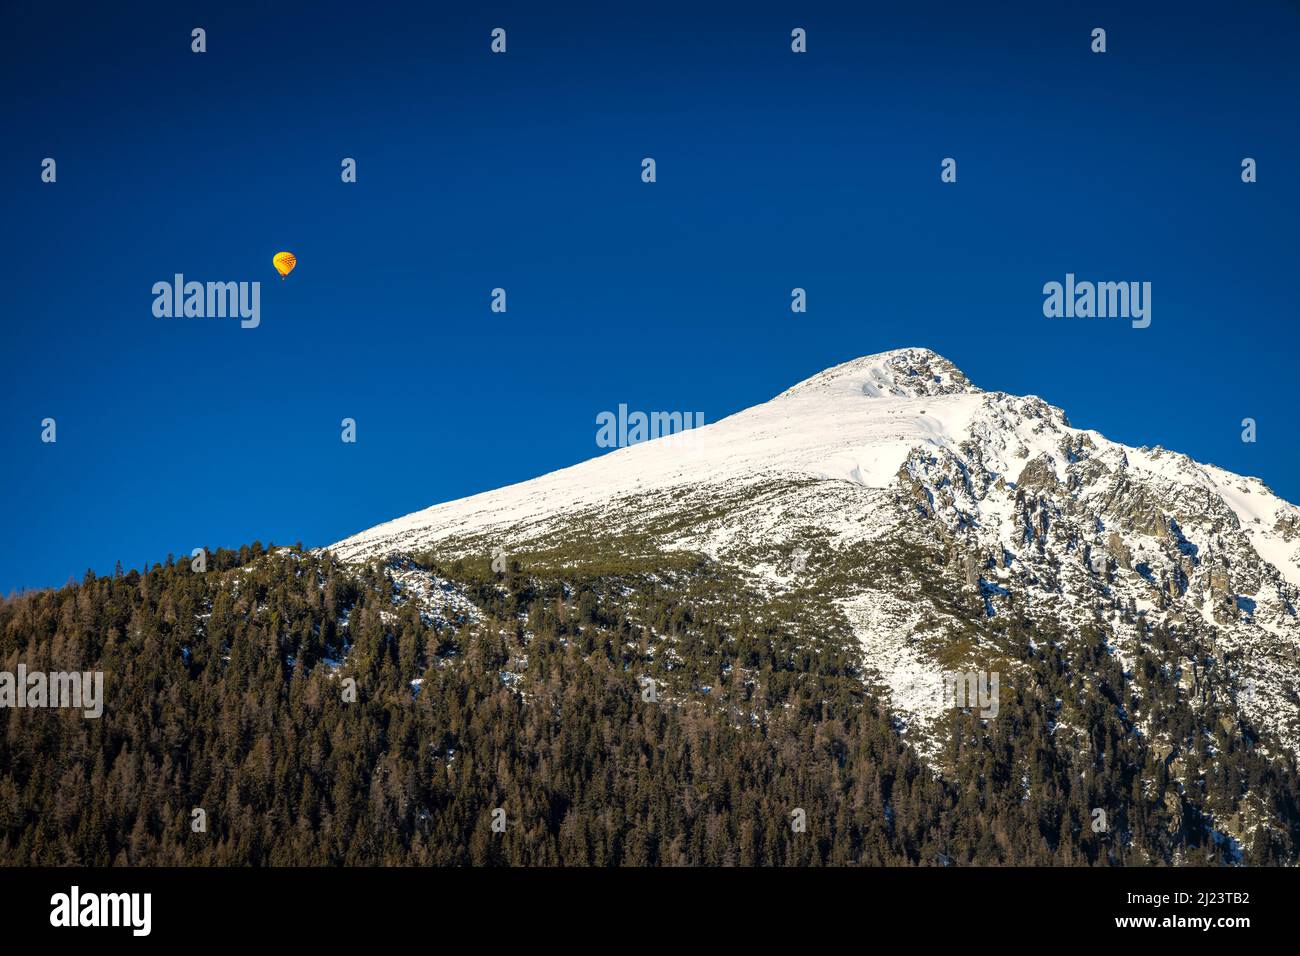 Vol en montgolfière au-dessus de la montagne enneigée Solisko dans le parc national des Hautes Tatras, Slovaquie, Europe. Banque D'Images